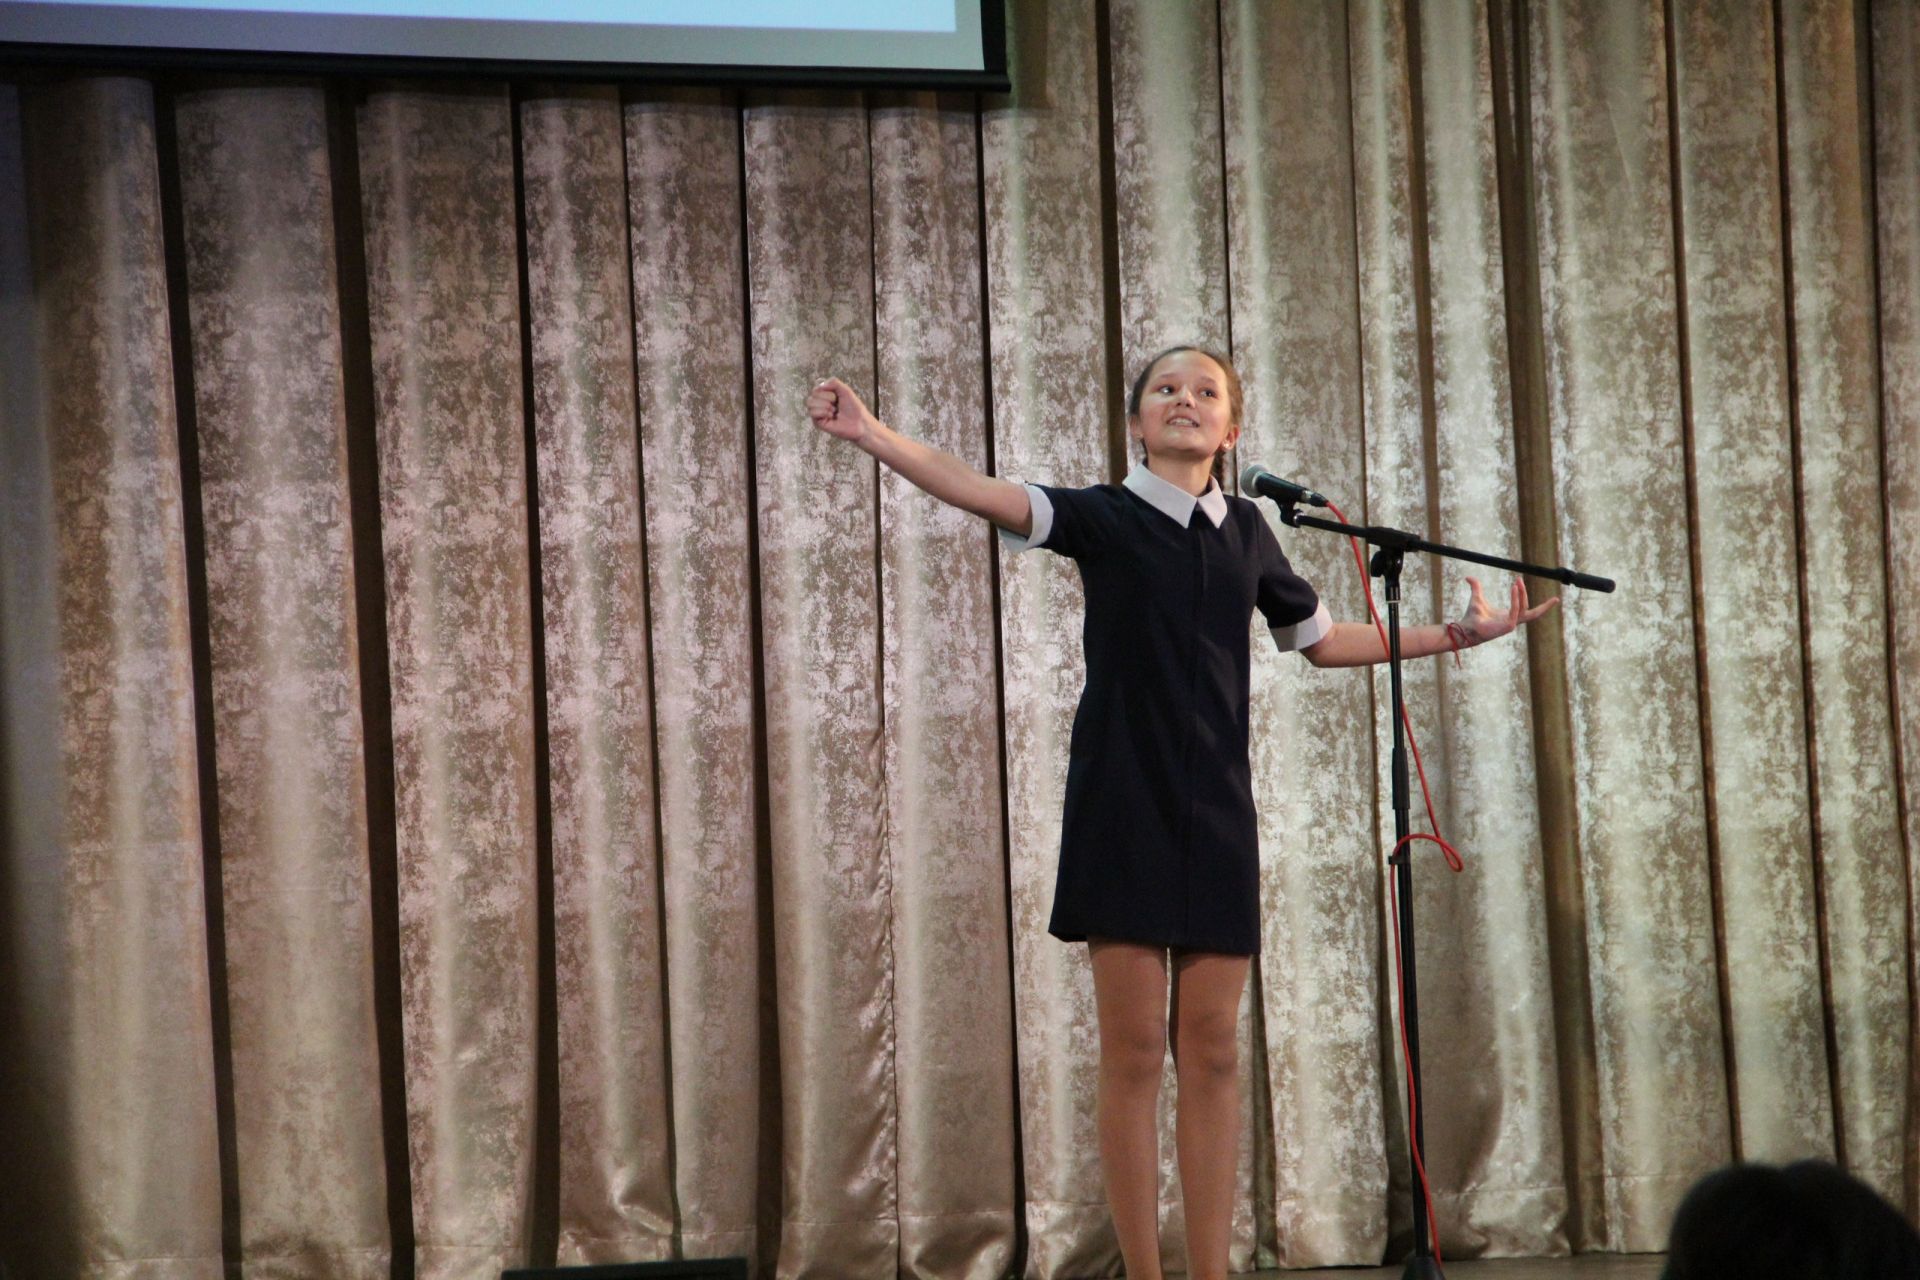 Фонд «Живая классика» объявил о проведении Всероссийского конкурса юных чтецов